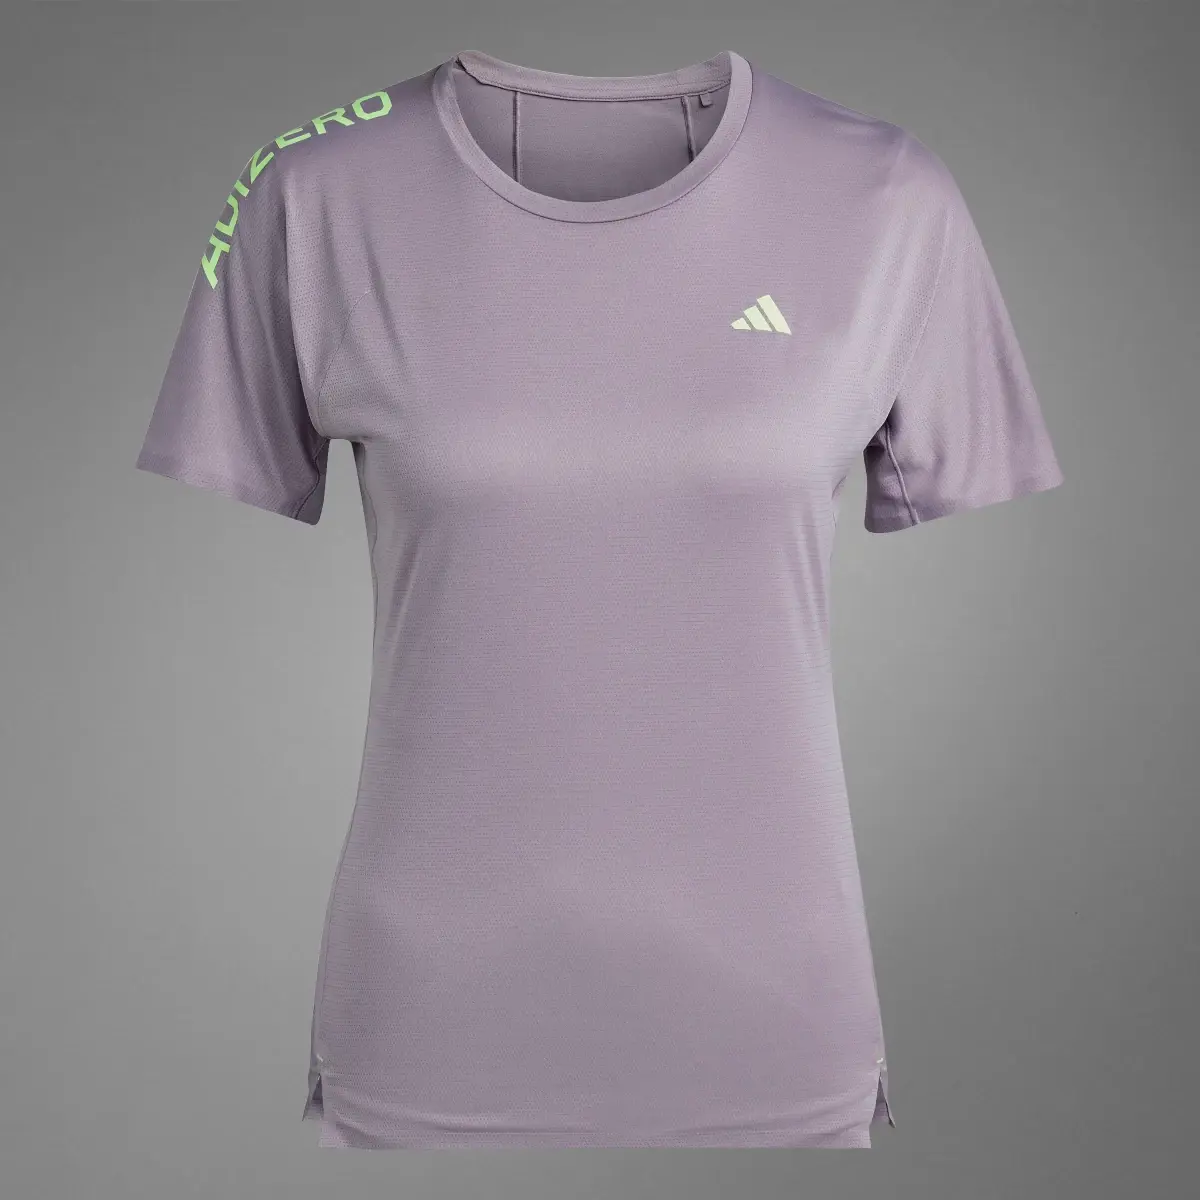 Adidas Adizero Running T-Shirt. 3